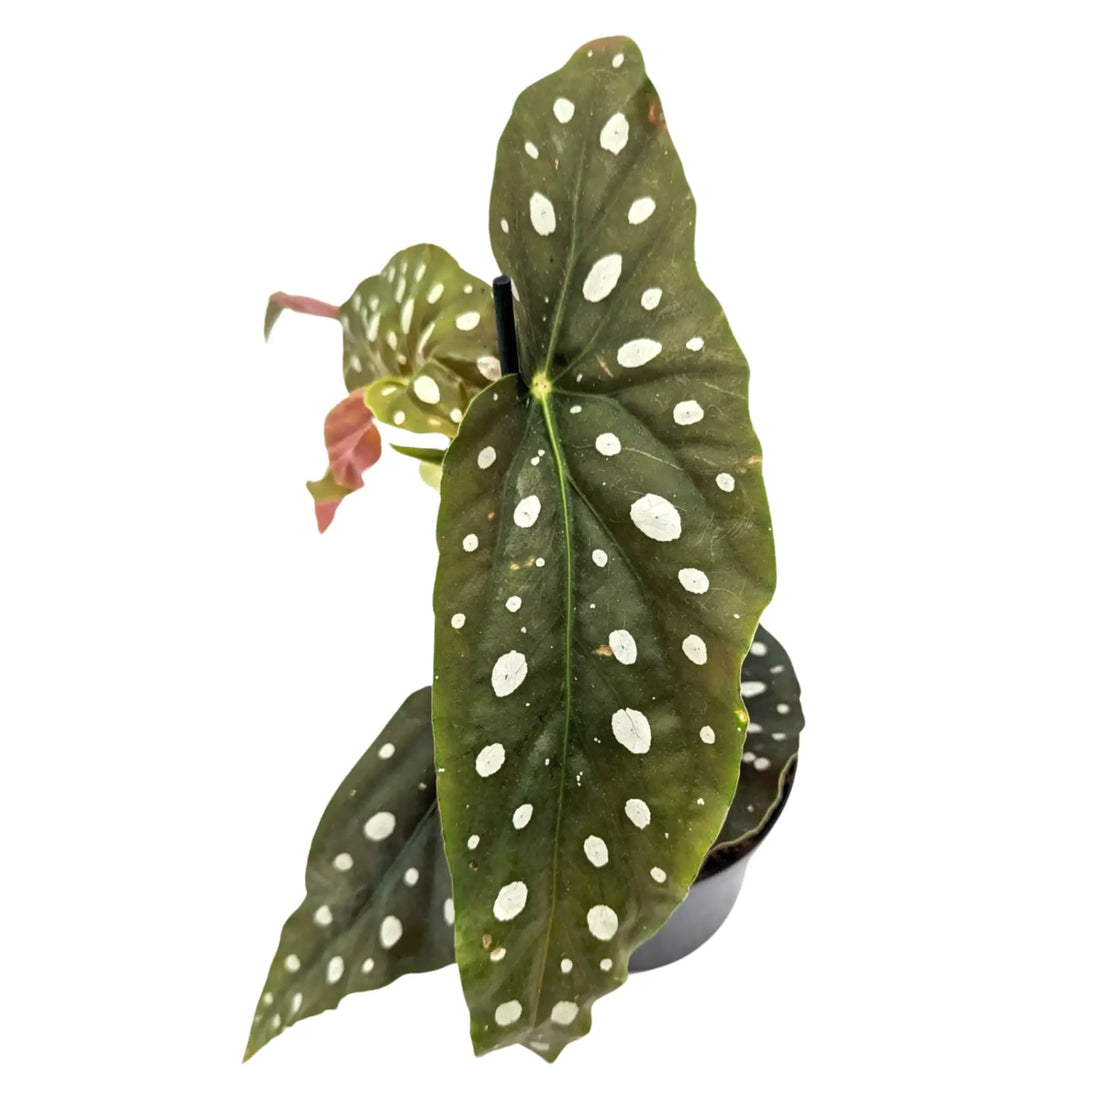 Spotted Begonia Maculata - Polka dot Begonia Leaf Culture